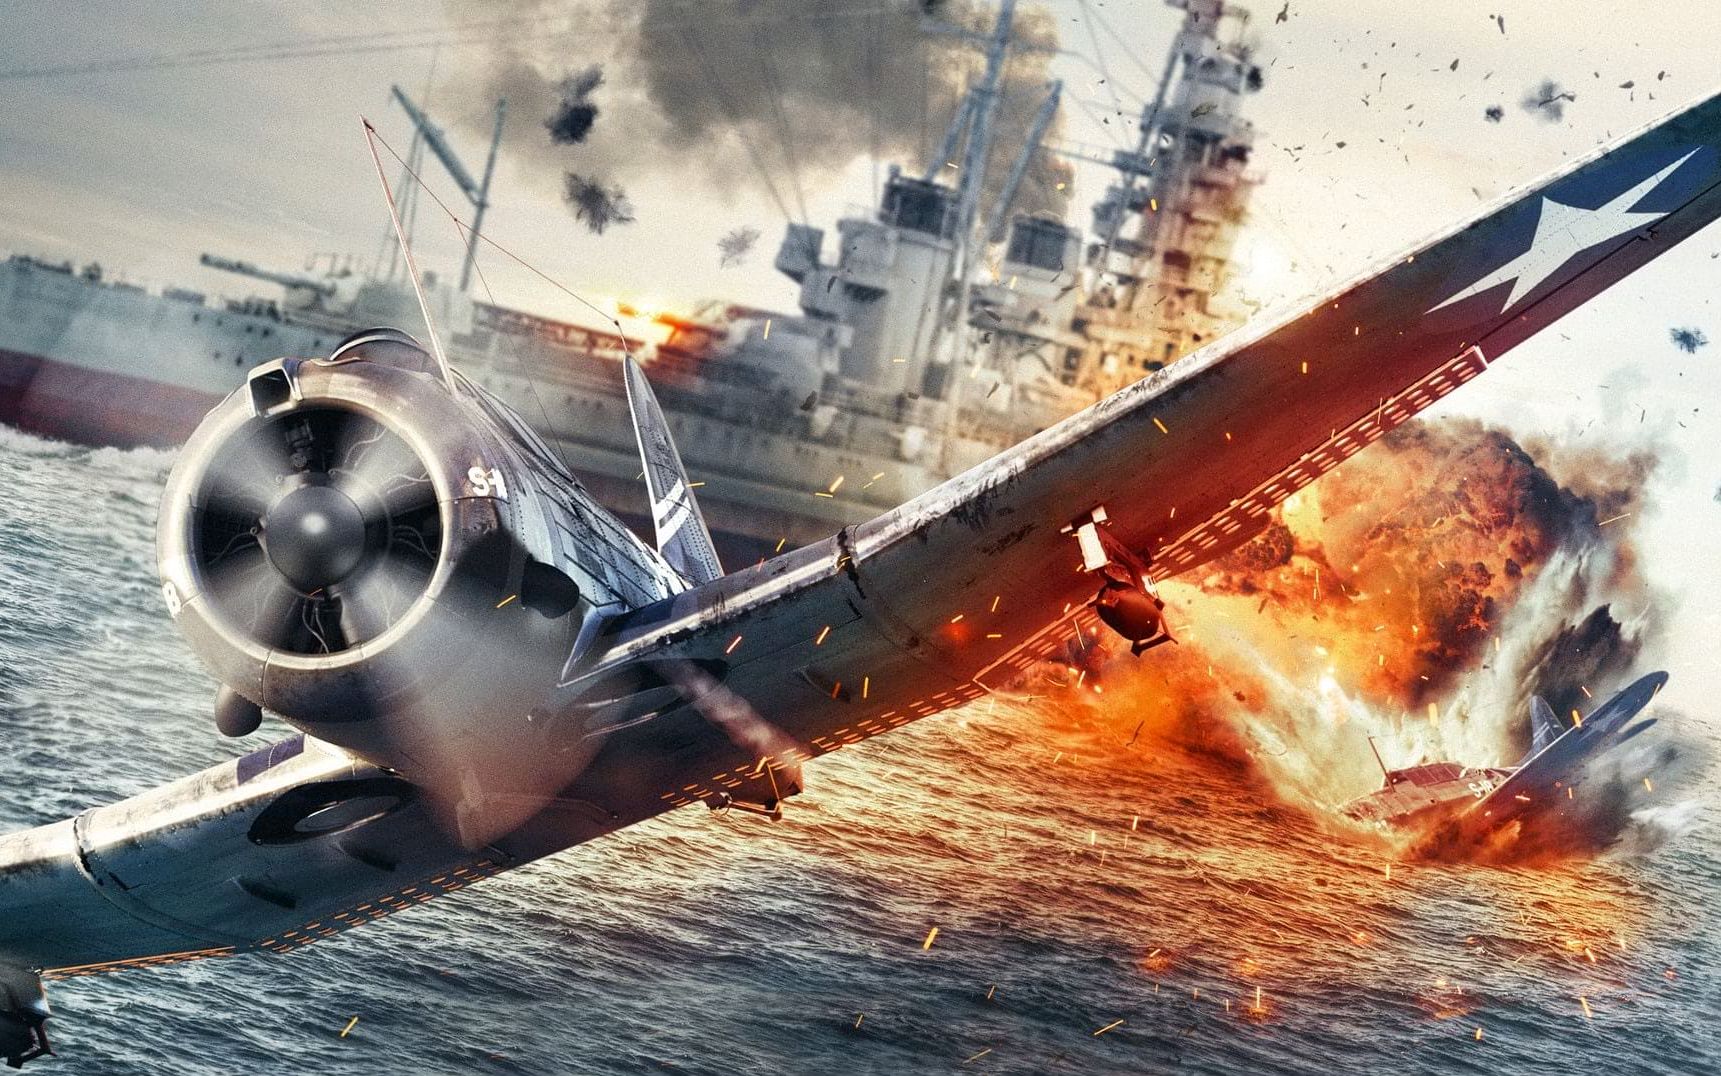 《决战中途岛》:2019年最佳战争片,足以媲美拯救大兵瑞恩,从拍摄到